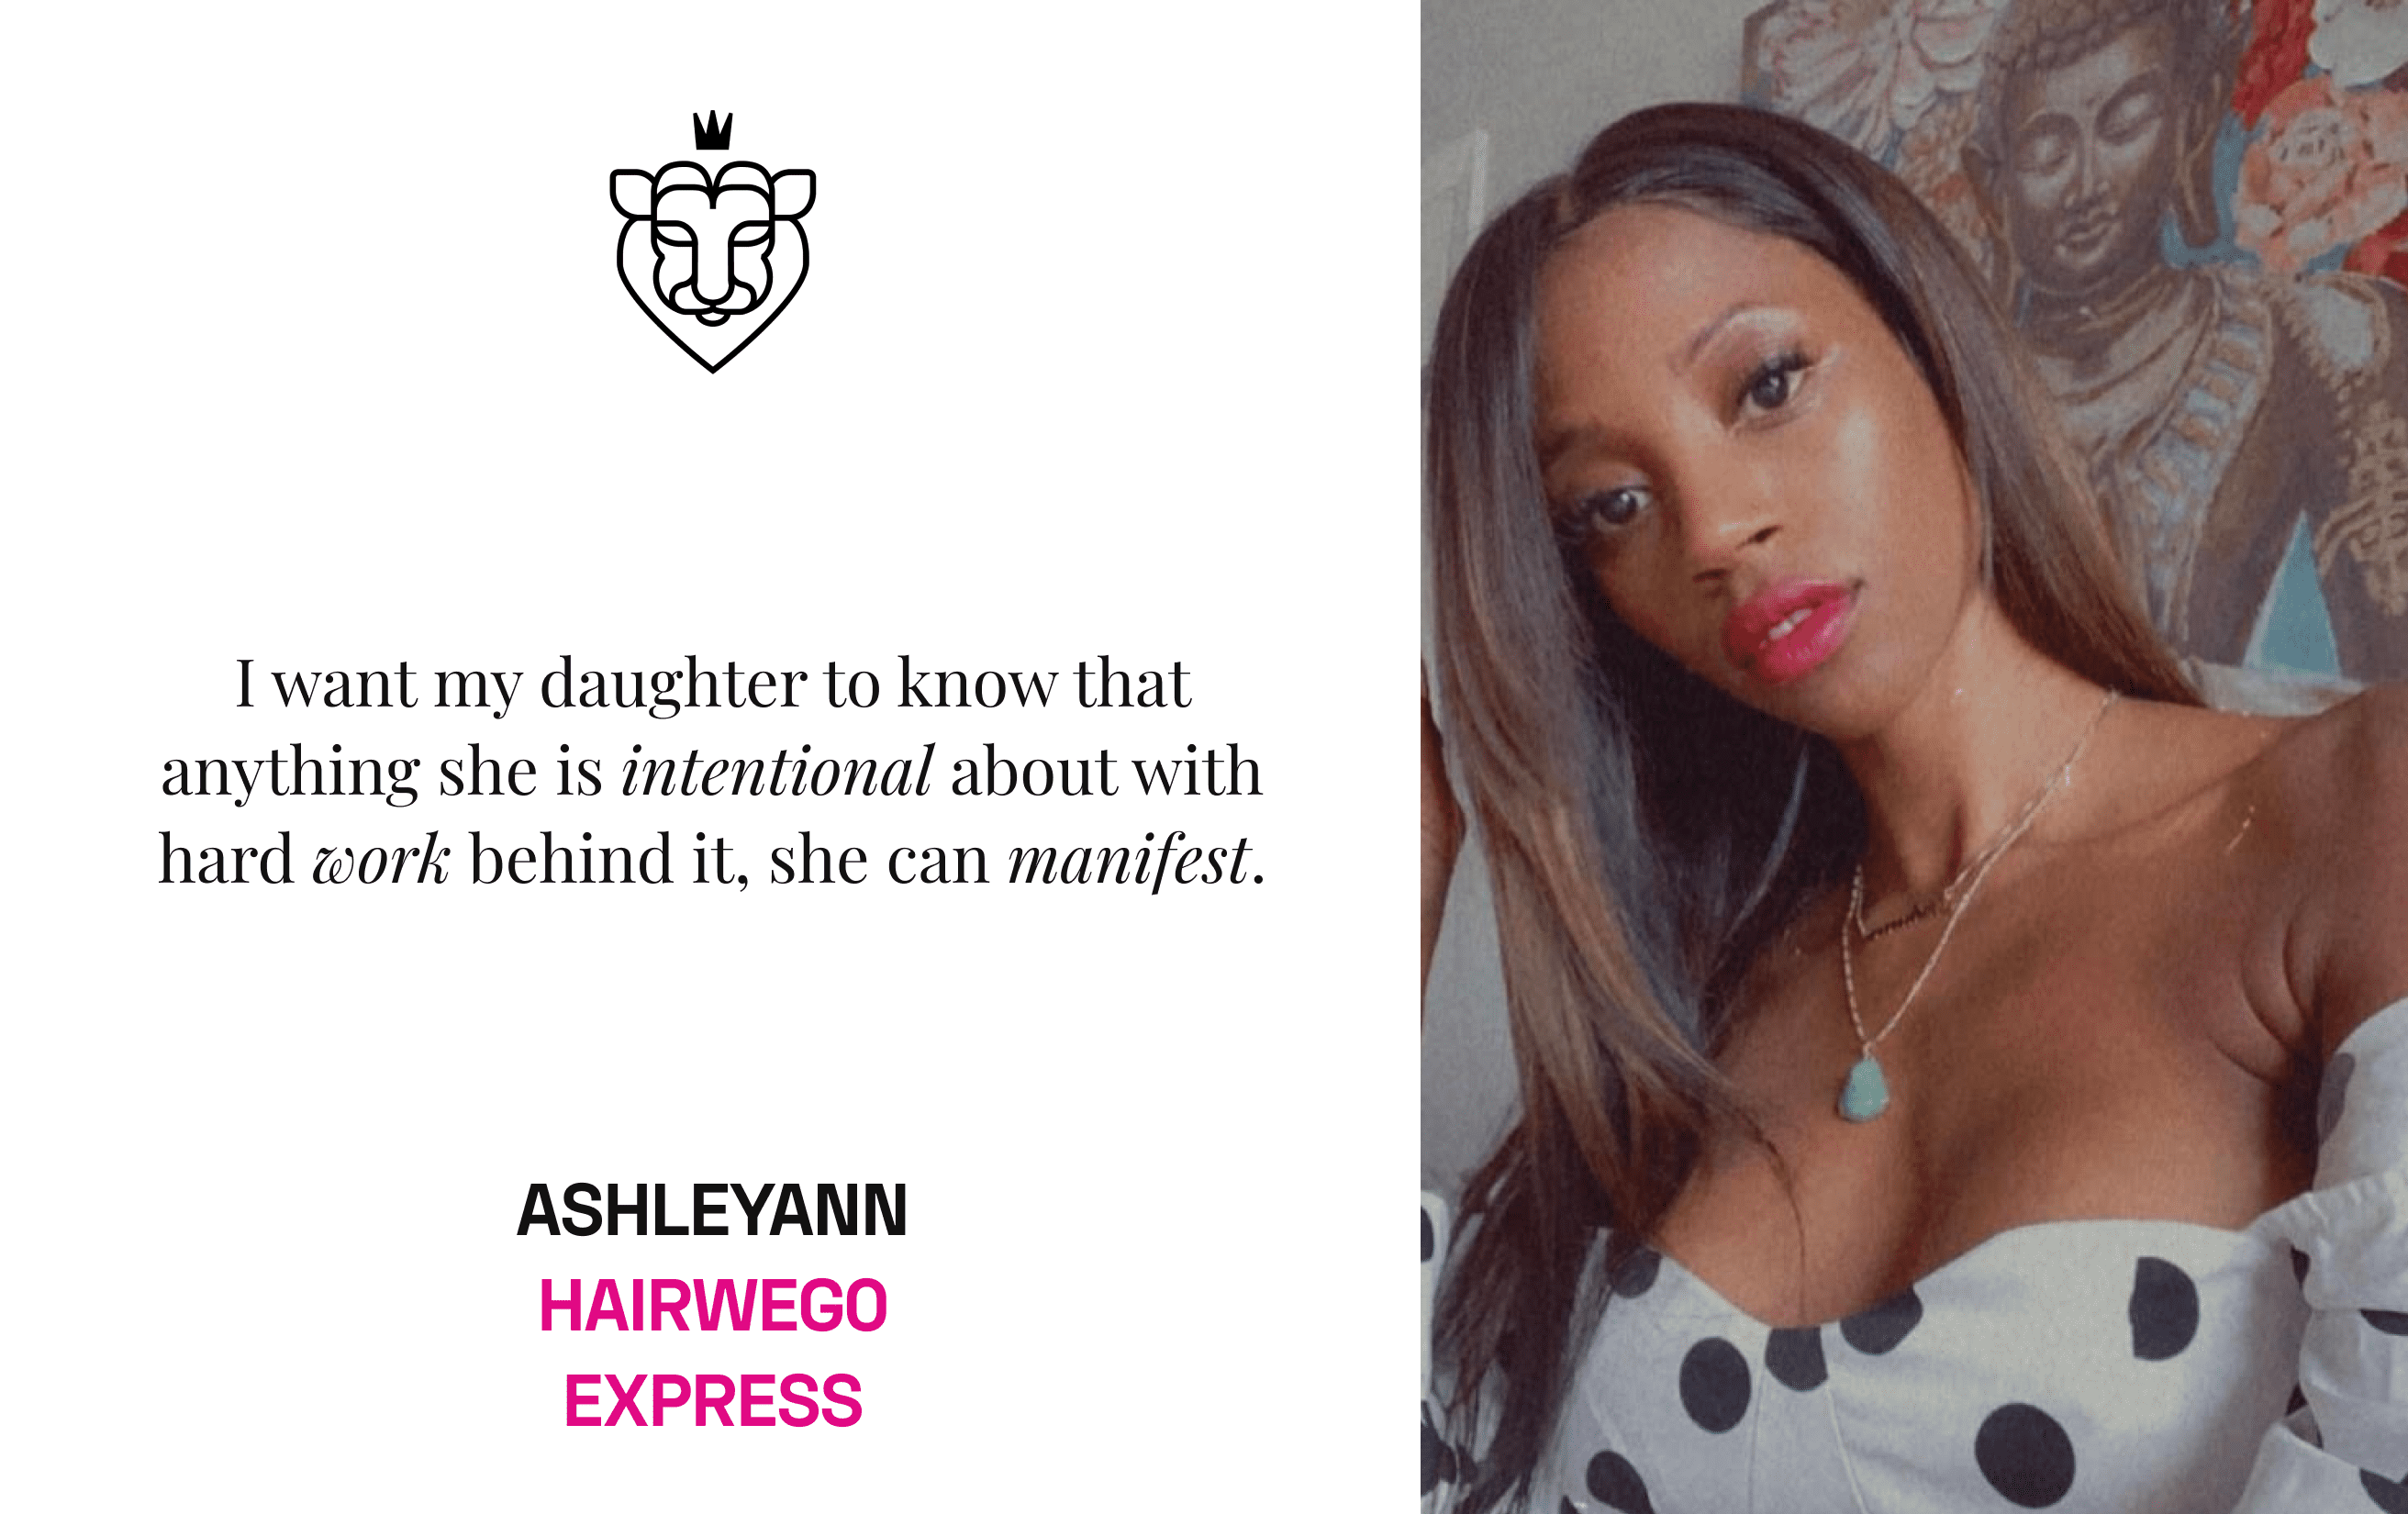 Hairstylist Ashleyann Williams of Hairweg0 Express